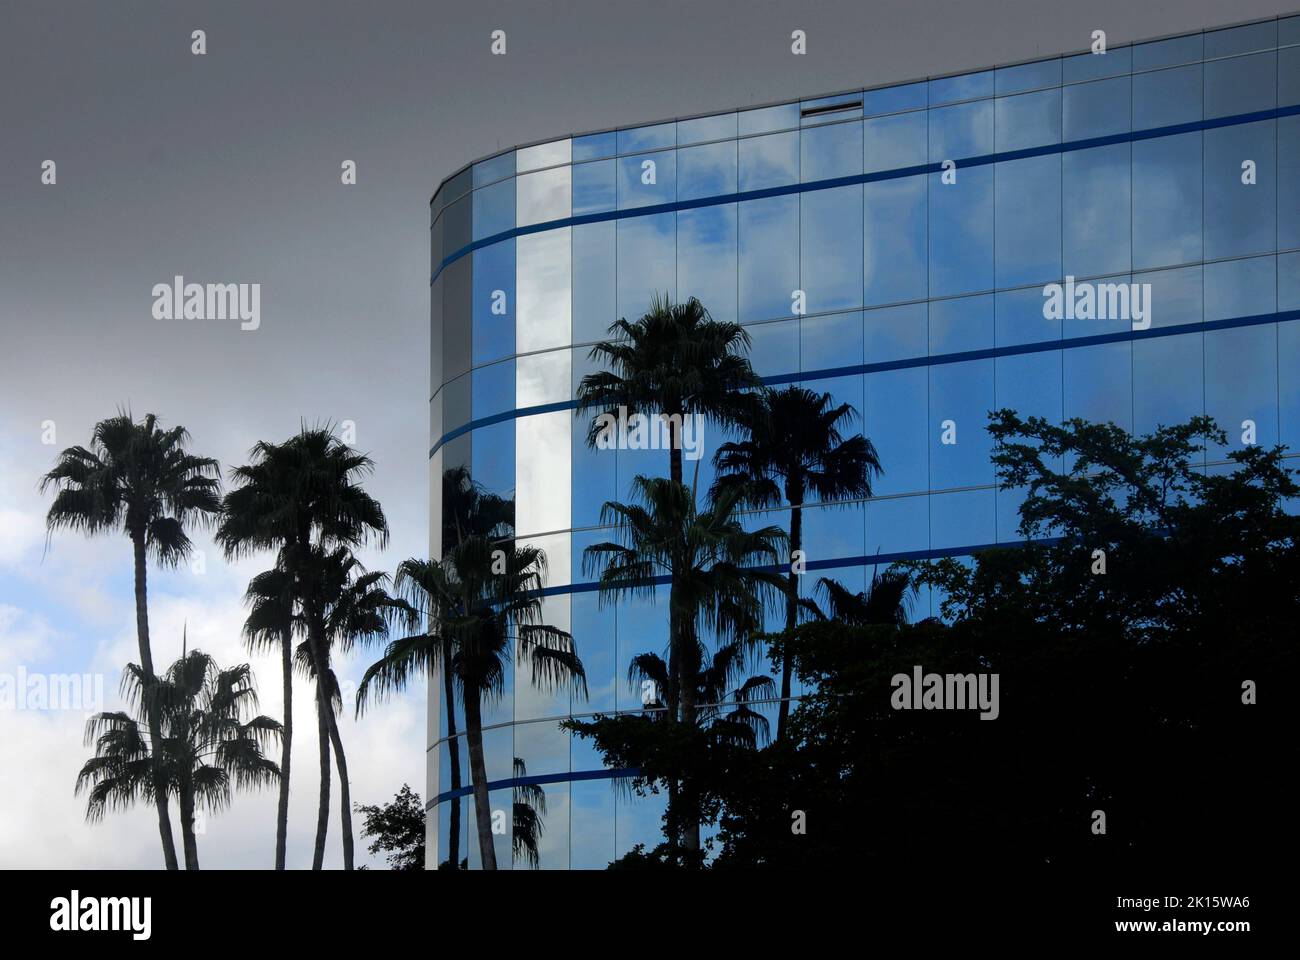 Il cielo minaccioso e tempestoso dietro l'hotel moderno riflette il cielo blu nei suoi esterni in vetro, Miami, Florida, USA Foto Stock